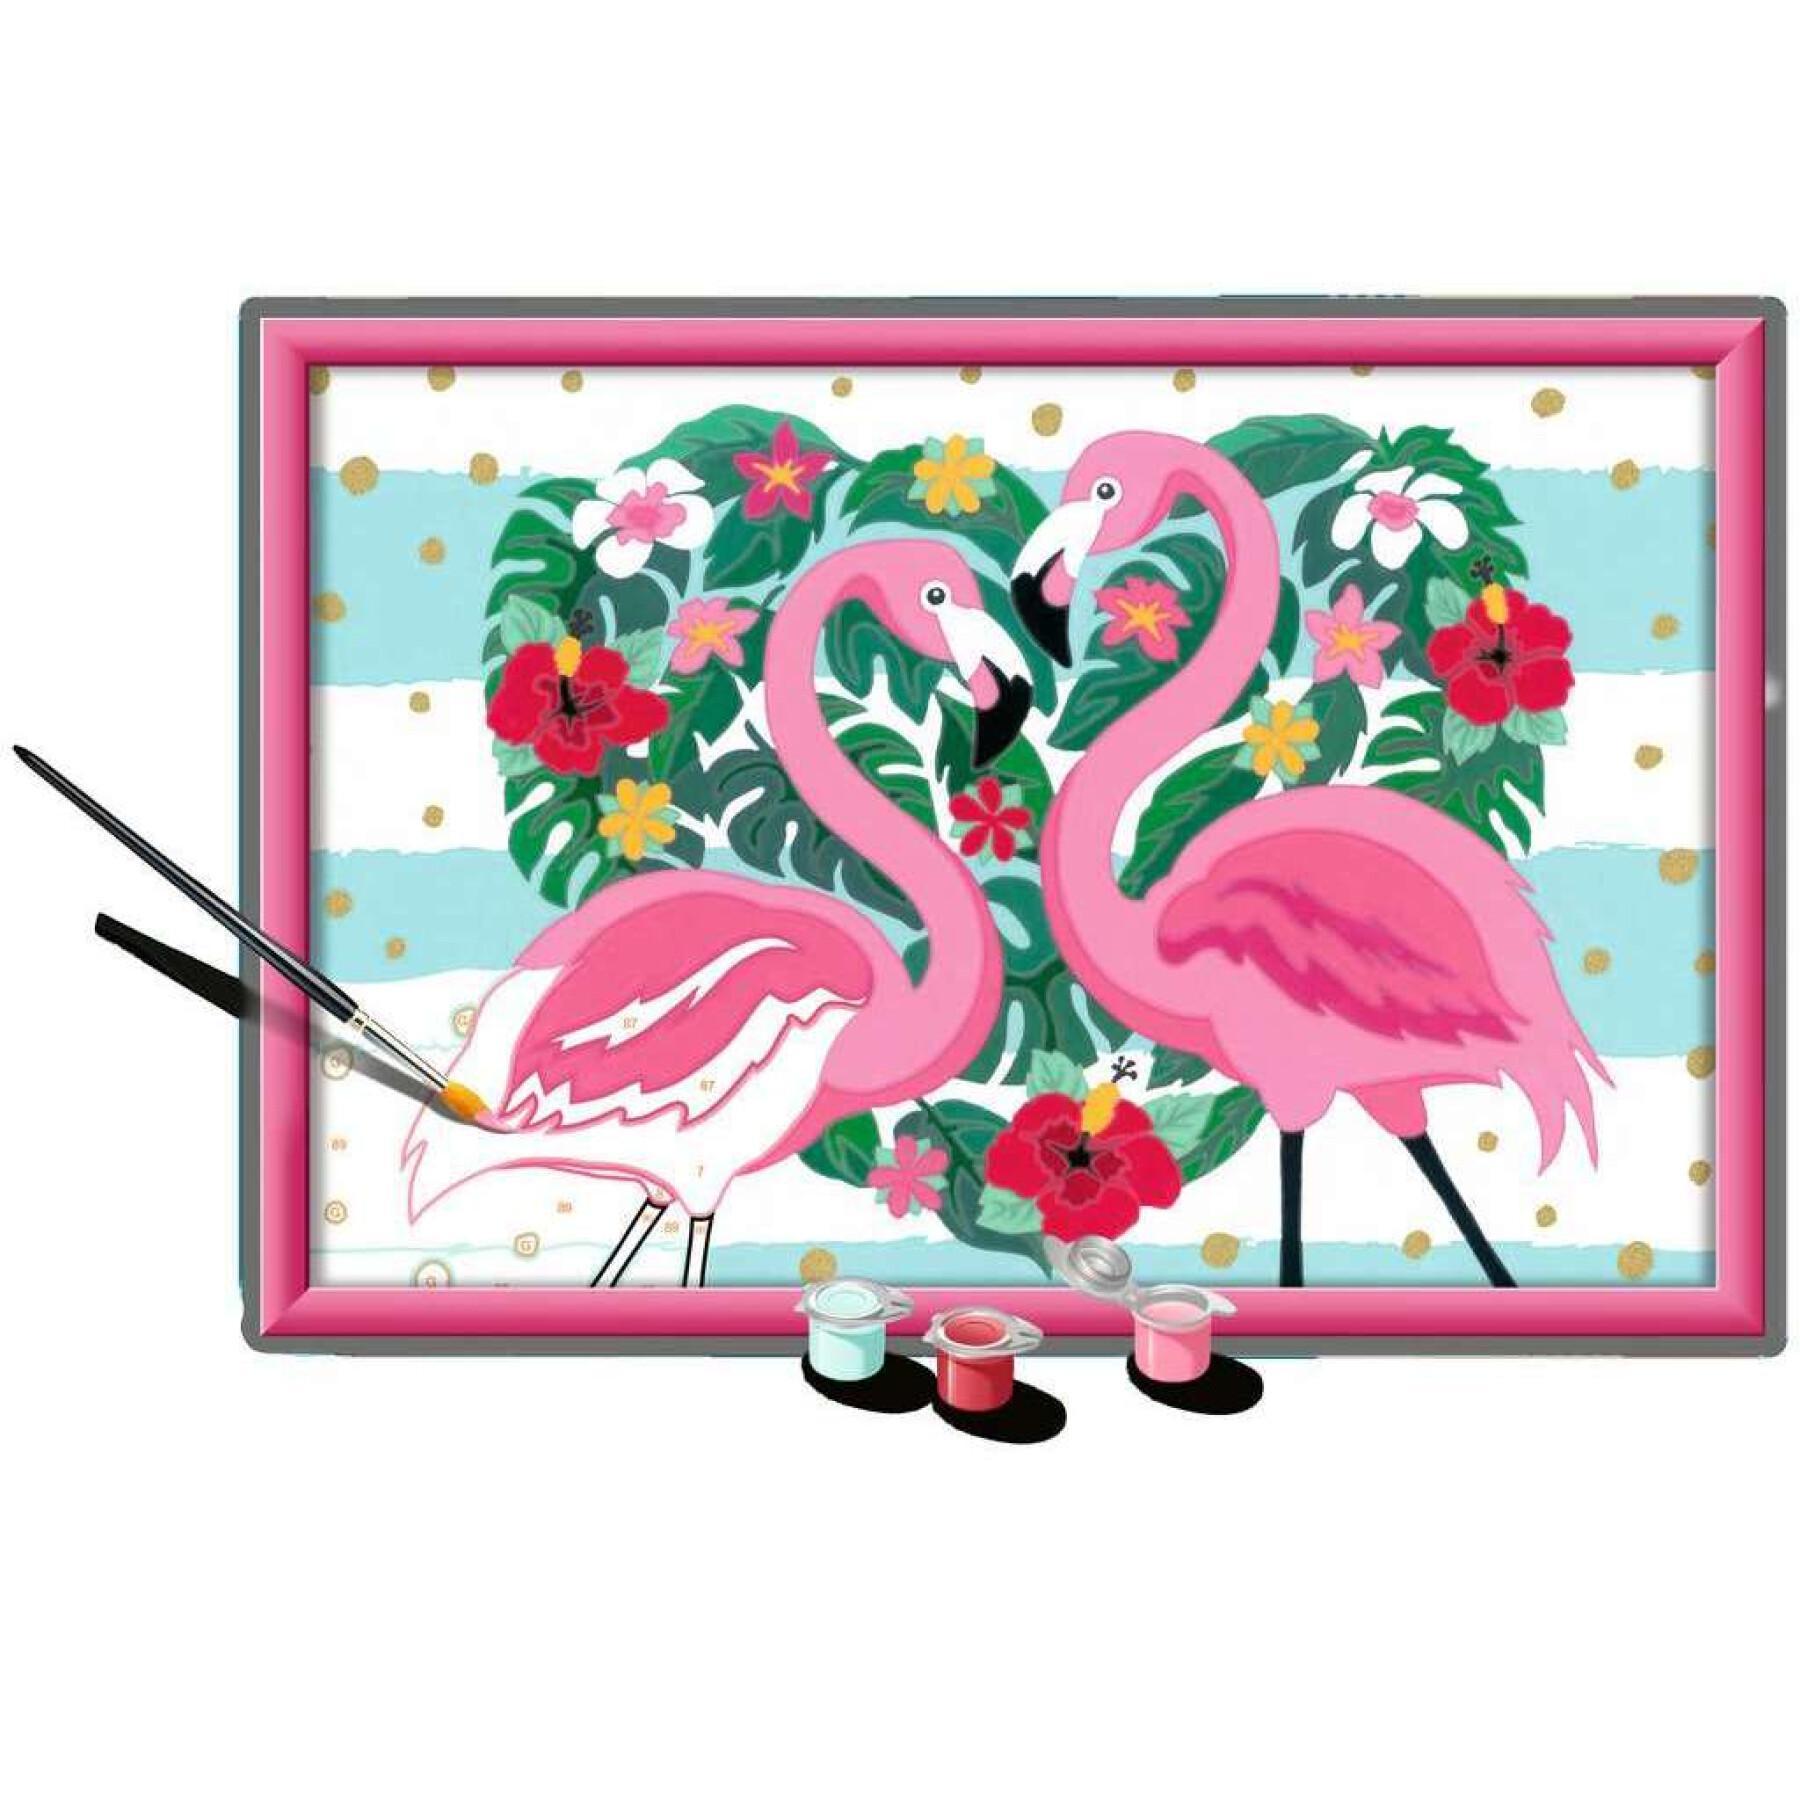 Grand flamingos i kärlek konst nummer Ravensburger